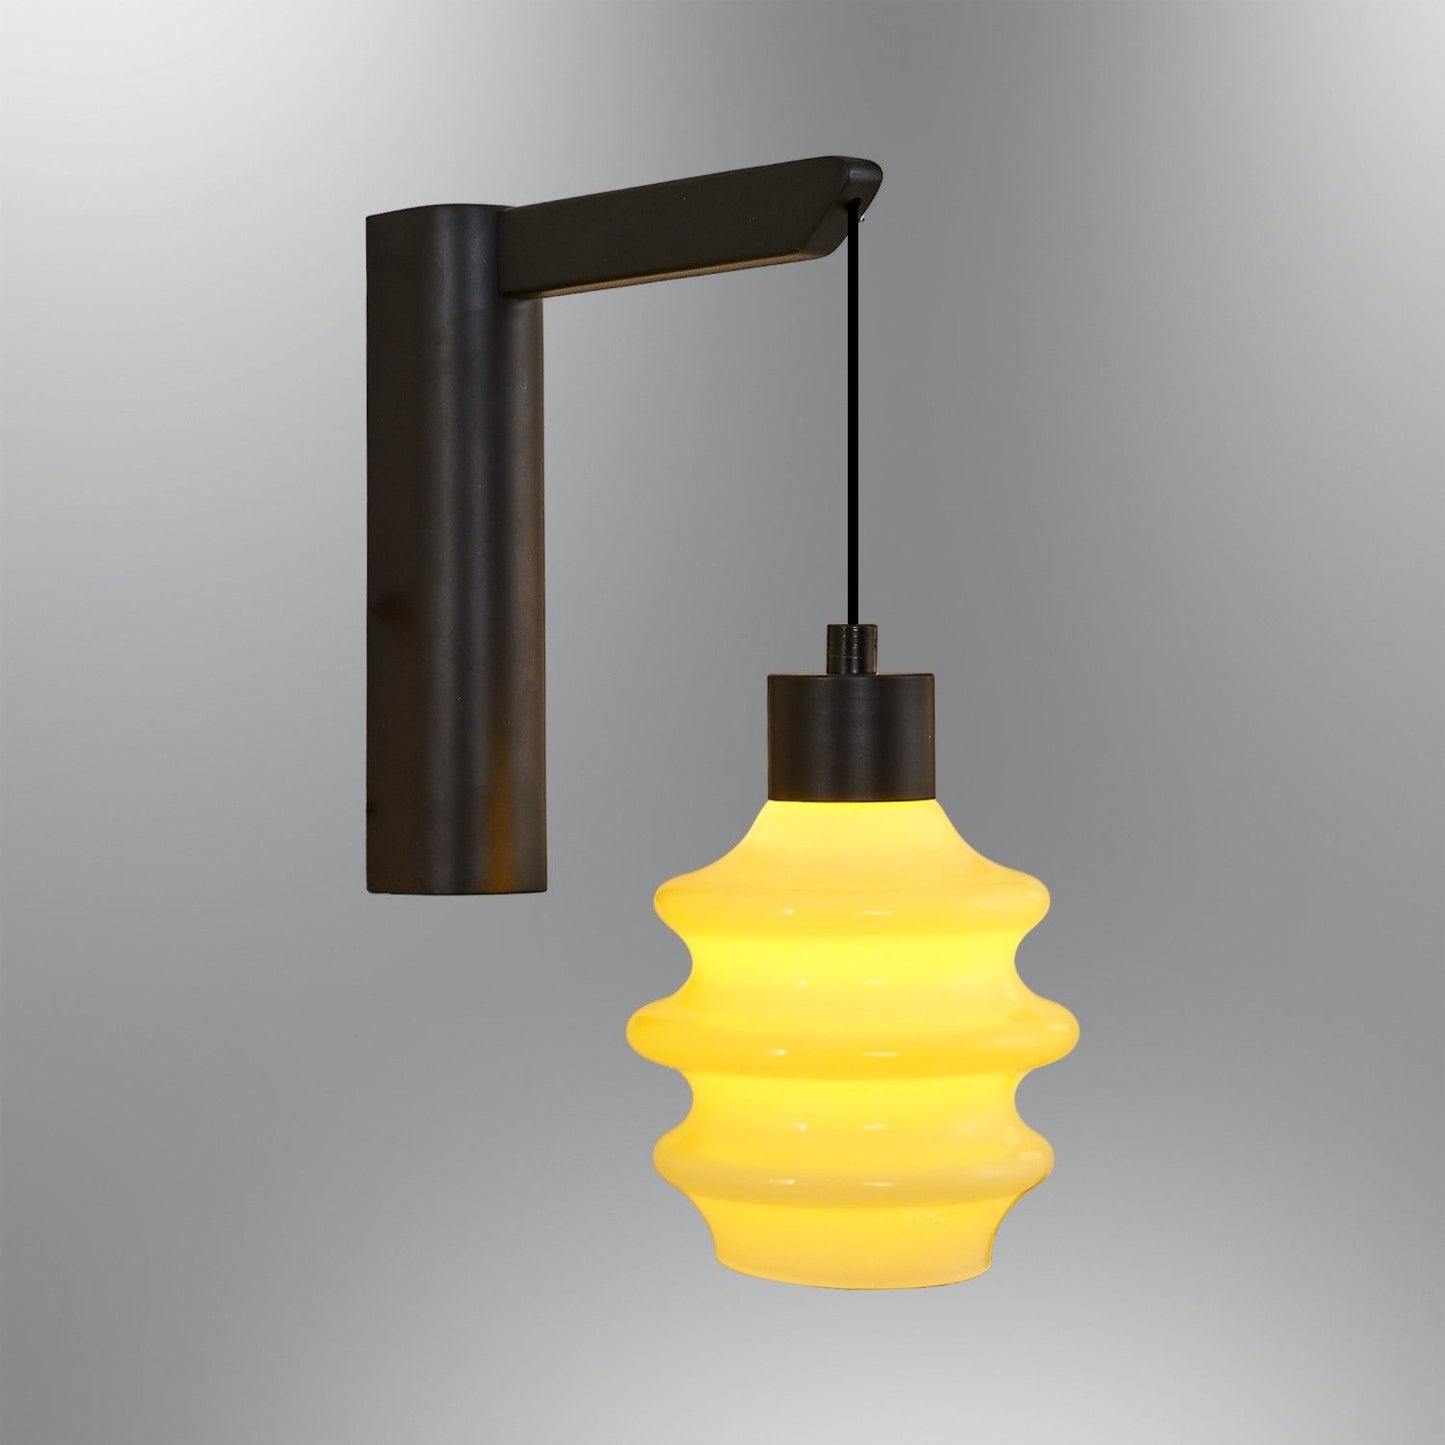 2830-APL-03 - Wall Lamp